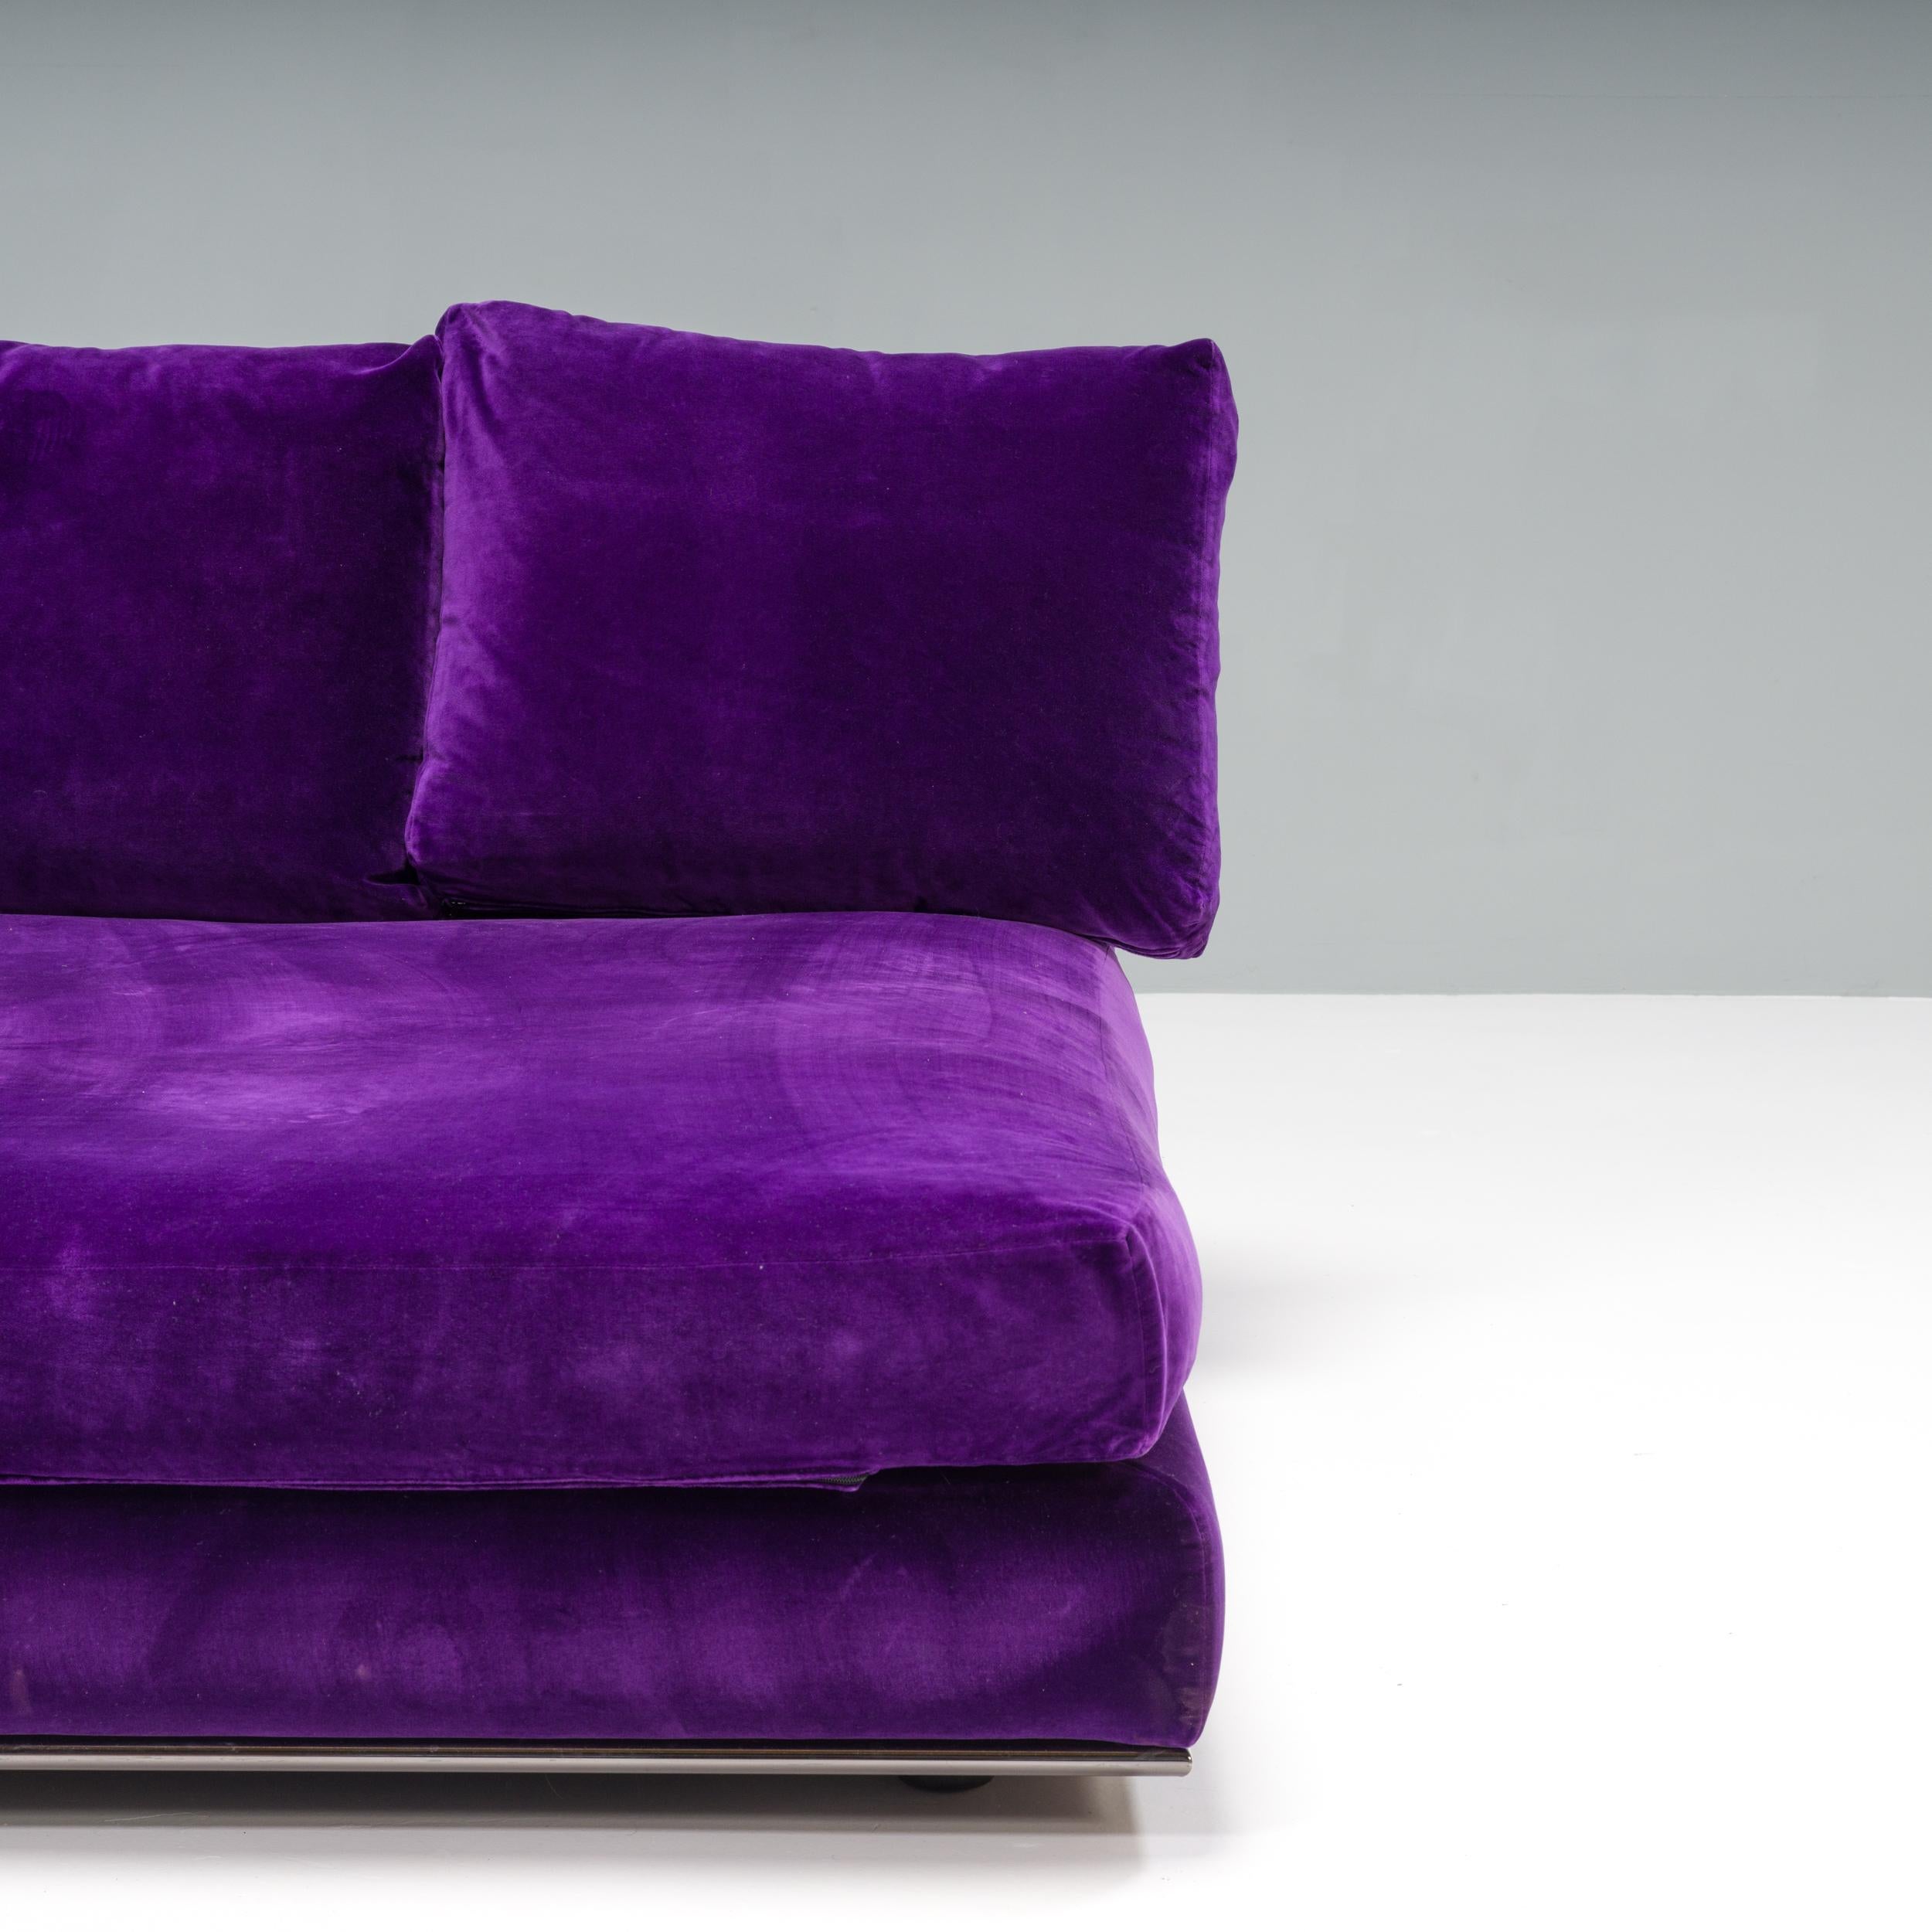 Dieses von Minotti entworfene Tagesbett ermöglicht ein luxuriöses Faulenzen. Das Bett mit seinen großzügigen Proportionen ruht auf einem schlanken Chromrahmen, der den Eindruck erweckt, als würde es leicht über dem Boden schweben.

Das vollständig